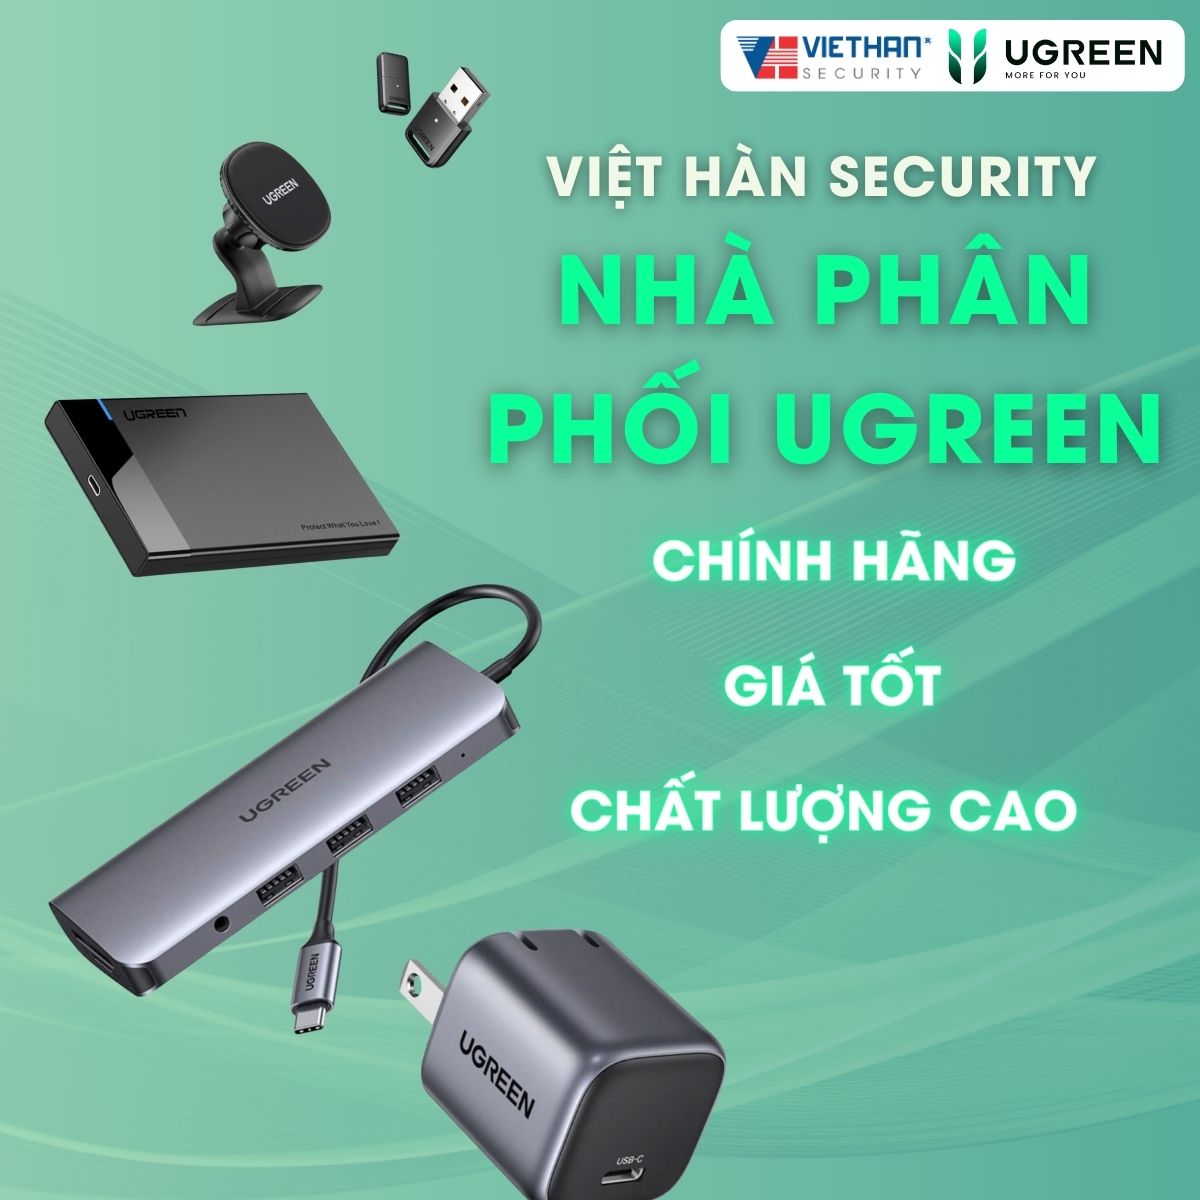 Việt Hàn Security Nhà phân phối Ugreen chính hãng, giá tốt, chất lượng cao